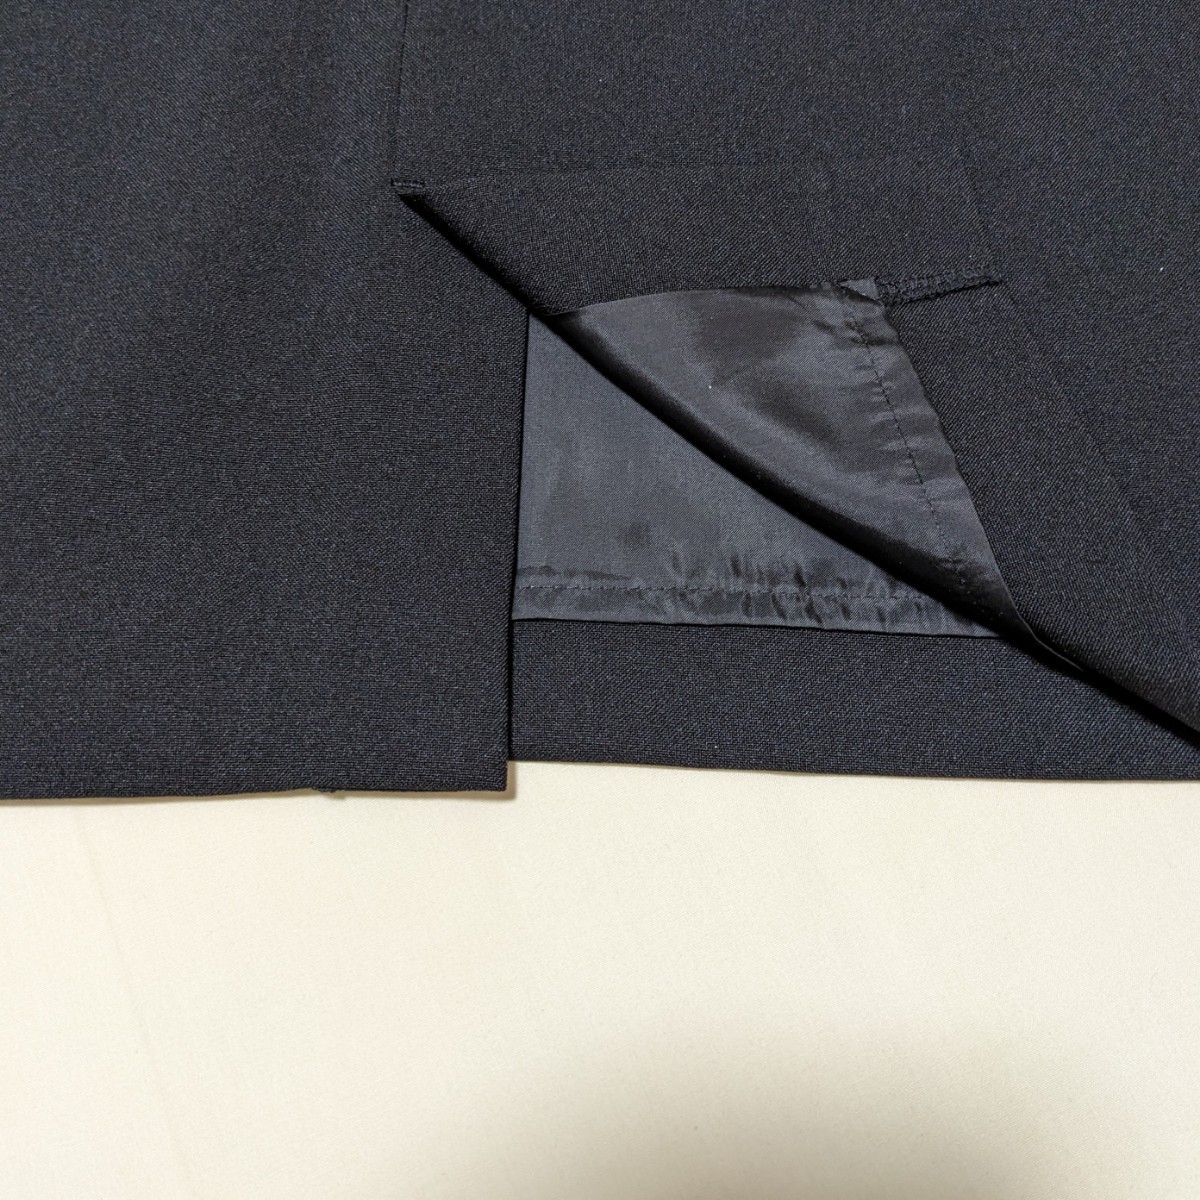 +FZ132 COPACAkopaka формальный женский 13 номер 13AR костюм чёрный одноцветный жакет юбка бизнес церемония 